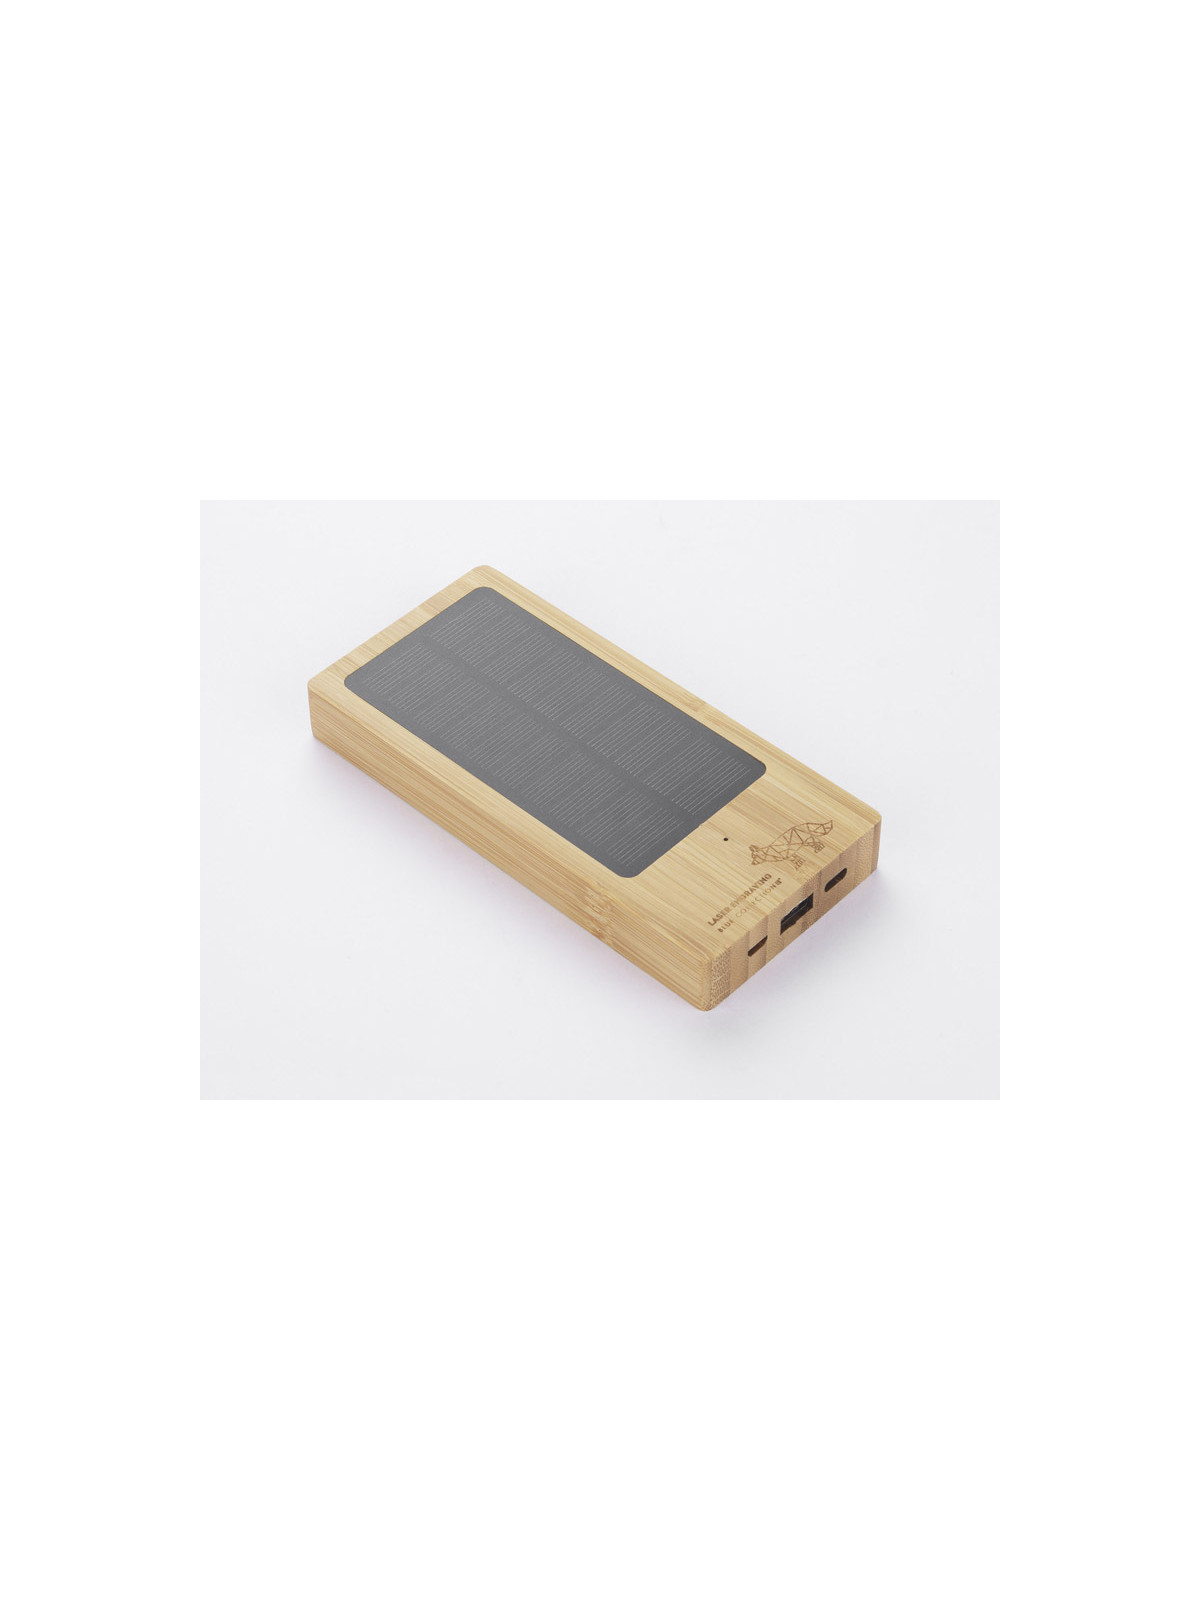 Batterie externe solaire en bambou écologique personnalisable, recharge un téléphone grâce à la lumière du soleil